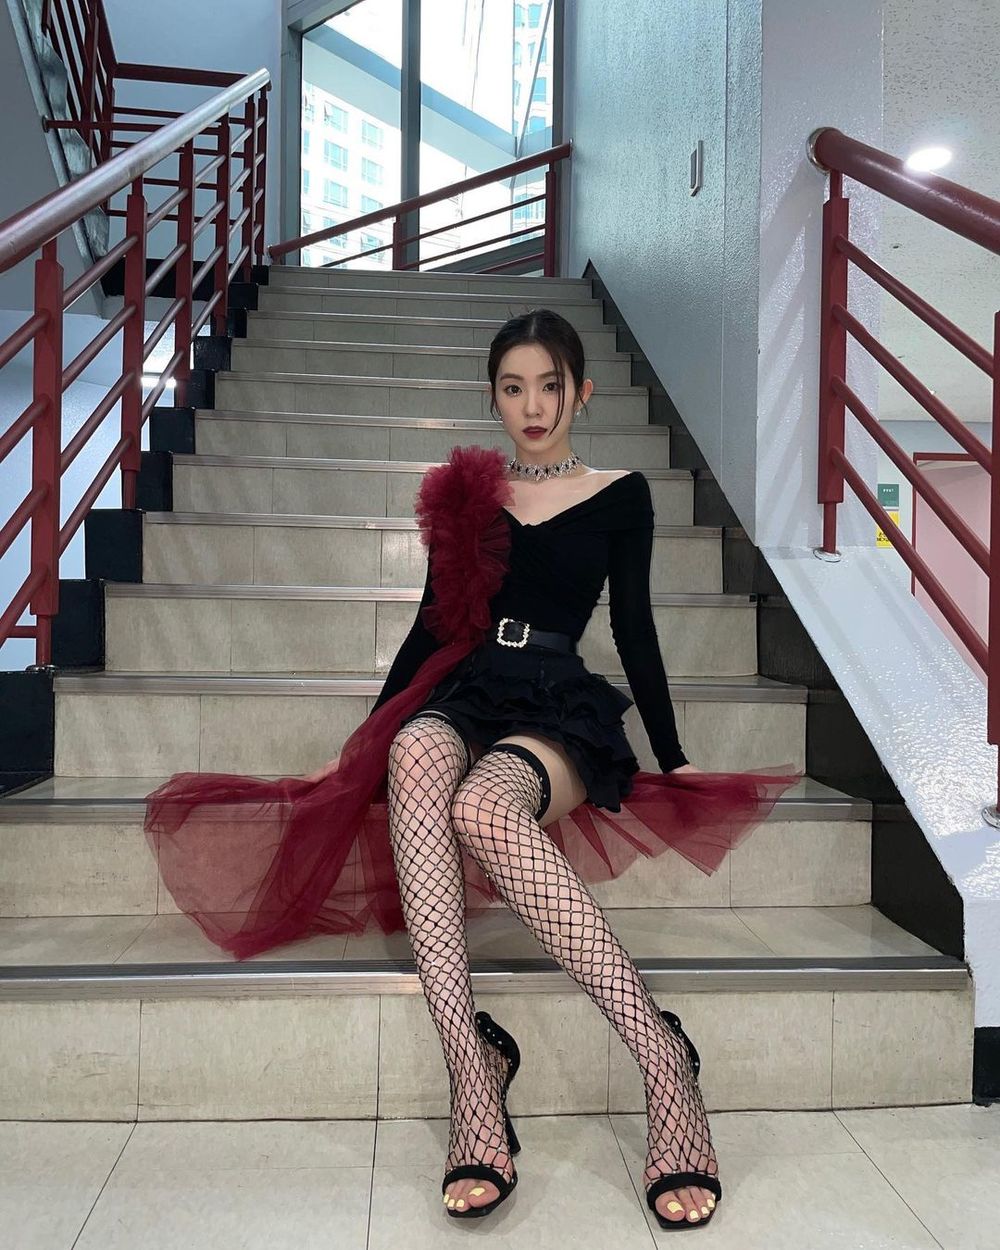  
Chiếc cầu thang ở SBS trở thành địa điểm sống ảo lí tưởng cho chị cả Red Velvet. (Ảnh: Instagram @renebaebae)